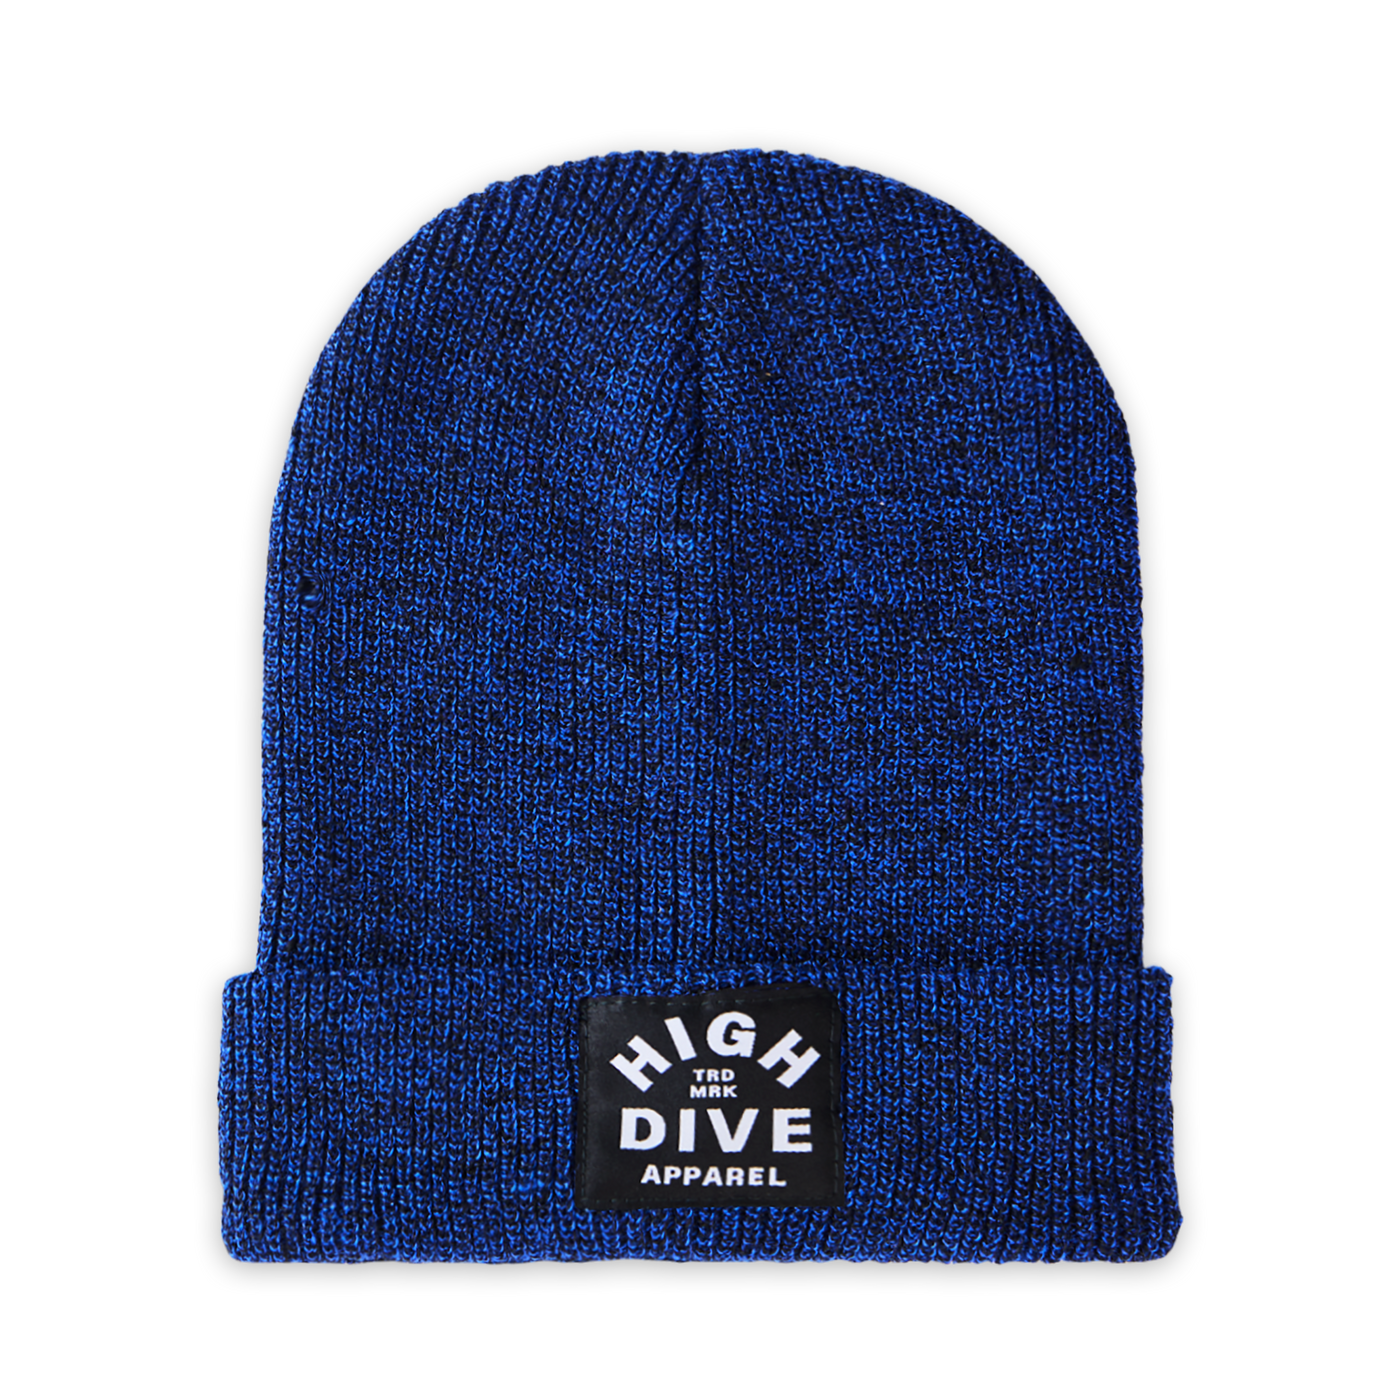 Antike königsblaue Mütze mit schwarzem HDA-Etikett